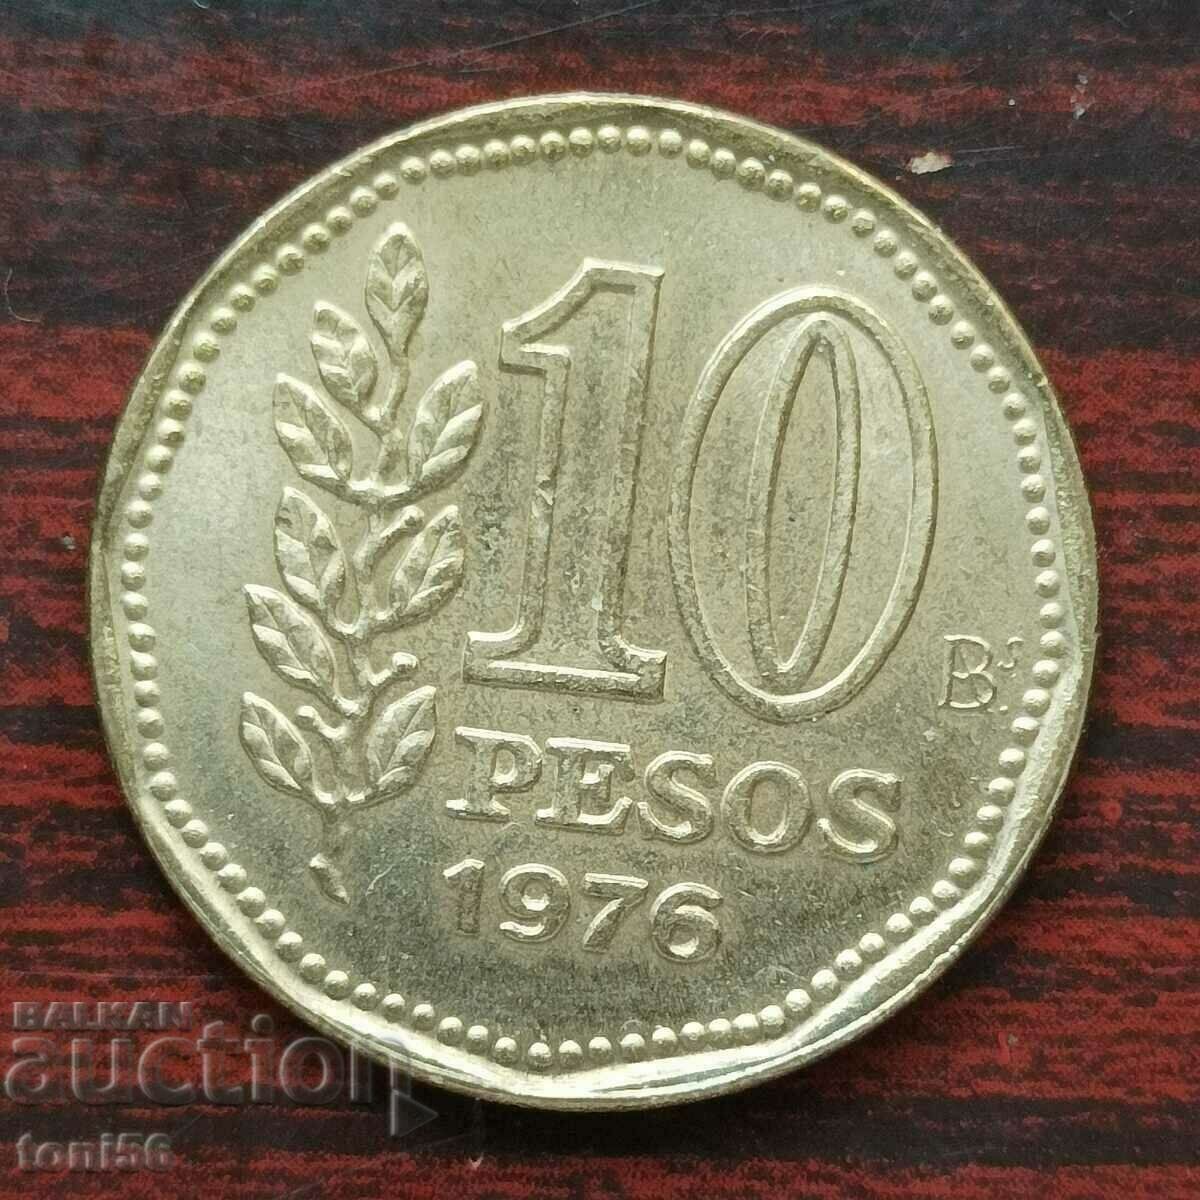 Argentina 10 pesos 1976 aUNC